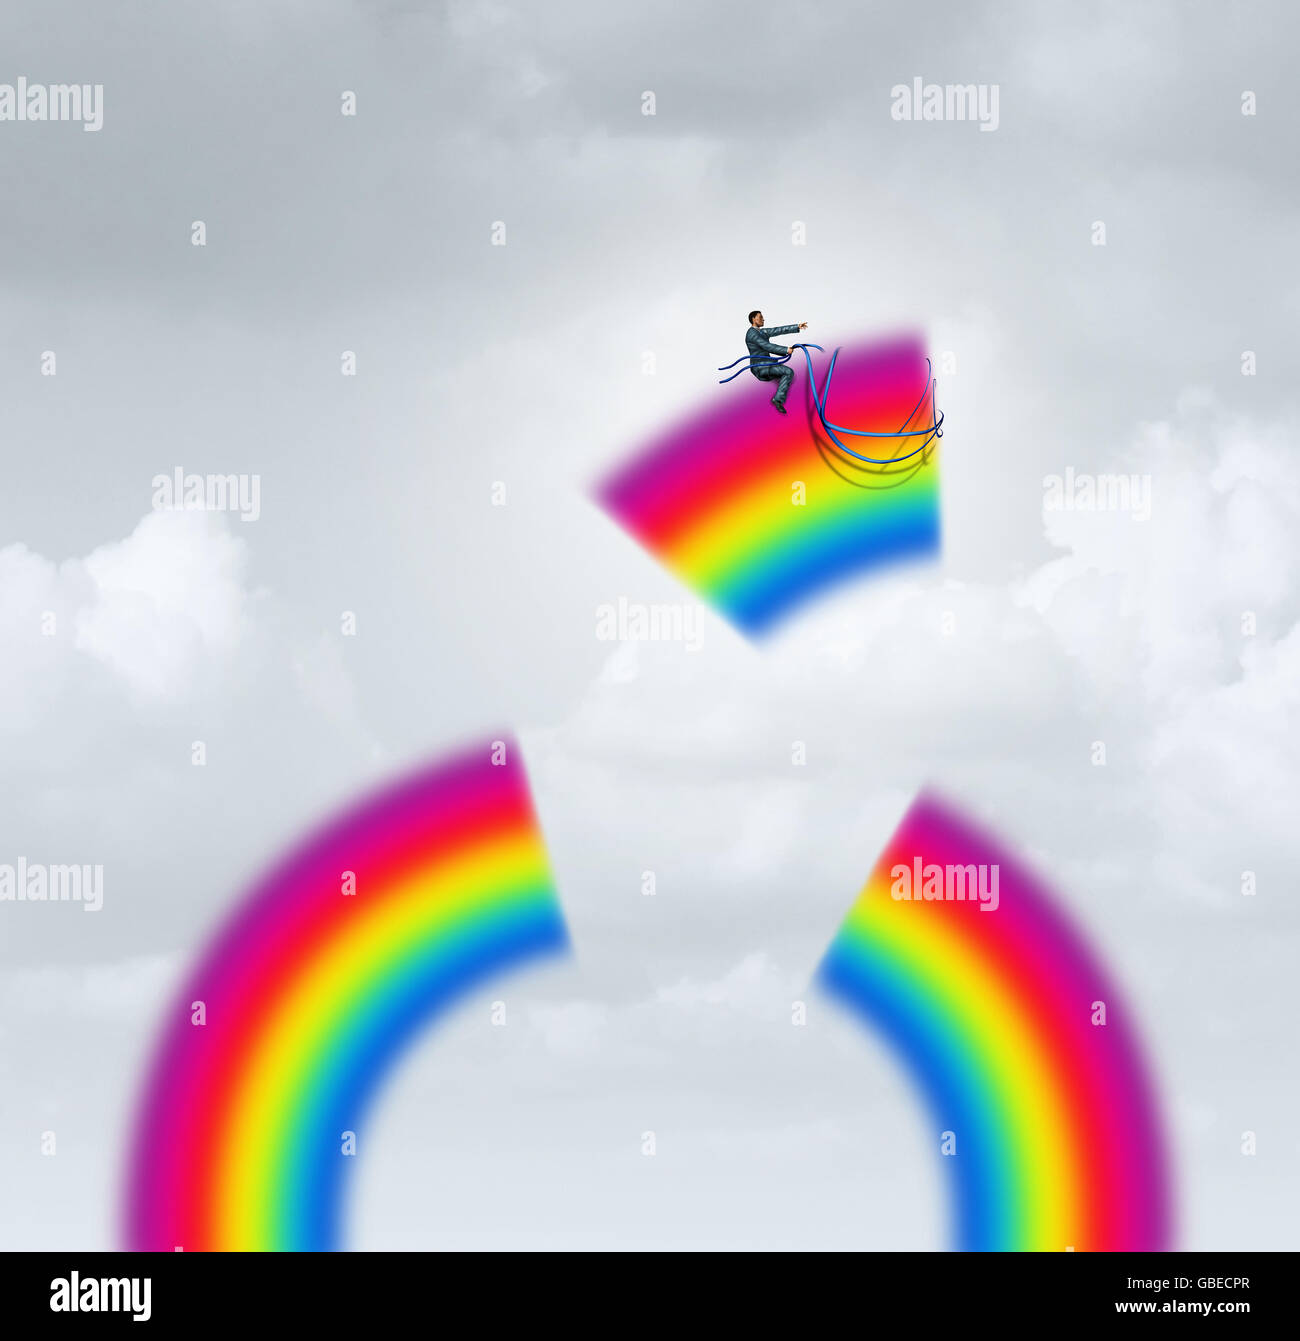 Erstellen Sie Ihr eigenes Glück Motivation Konzept als Geschäftsmann die Kontrolle über ein Stück Regenbogen mit einem Gurtzeug fliegen in Richtung einer Karriere oder Leben Ziel in einer 3D Darstellung Stil. Stockfoto